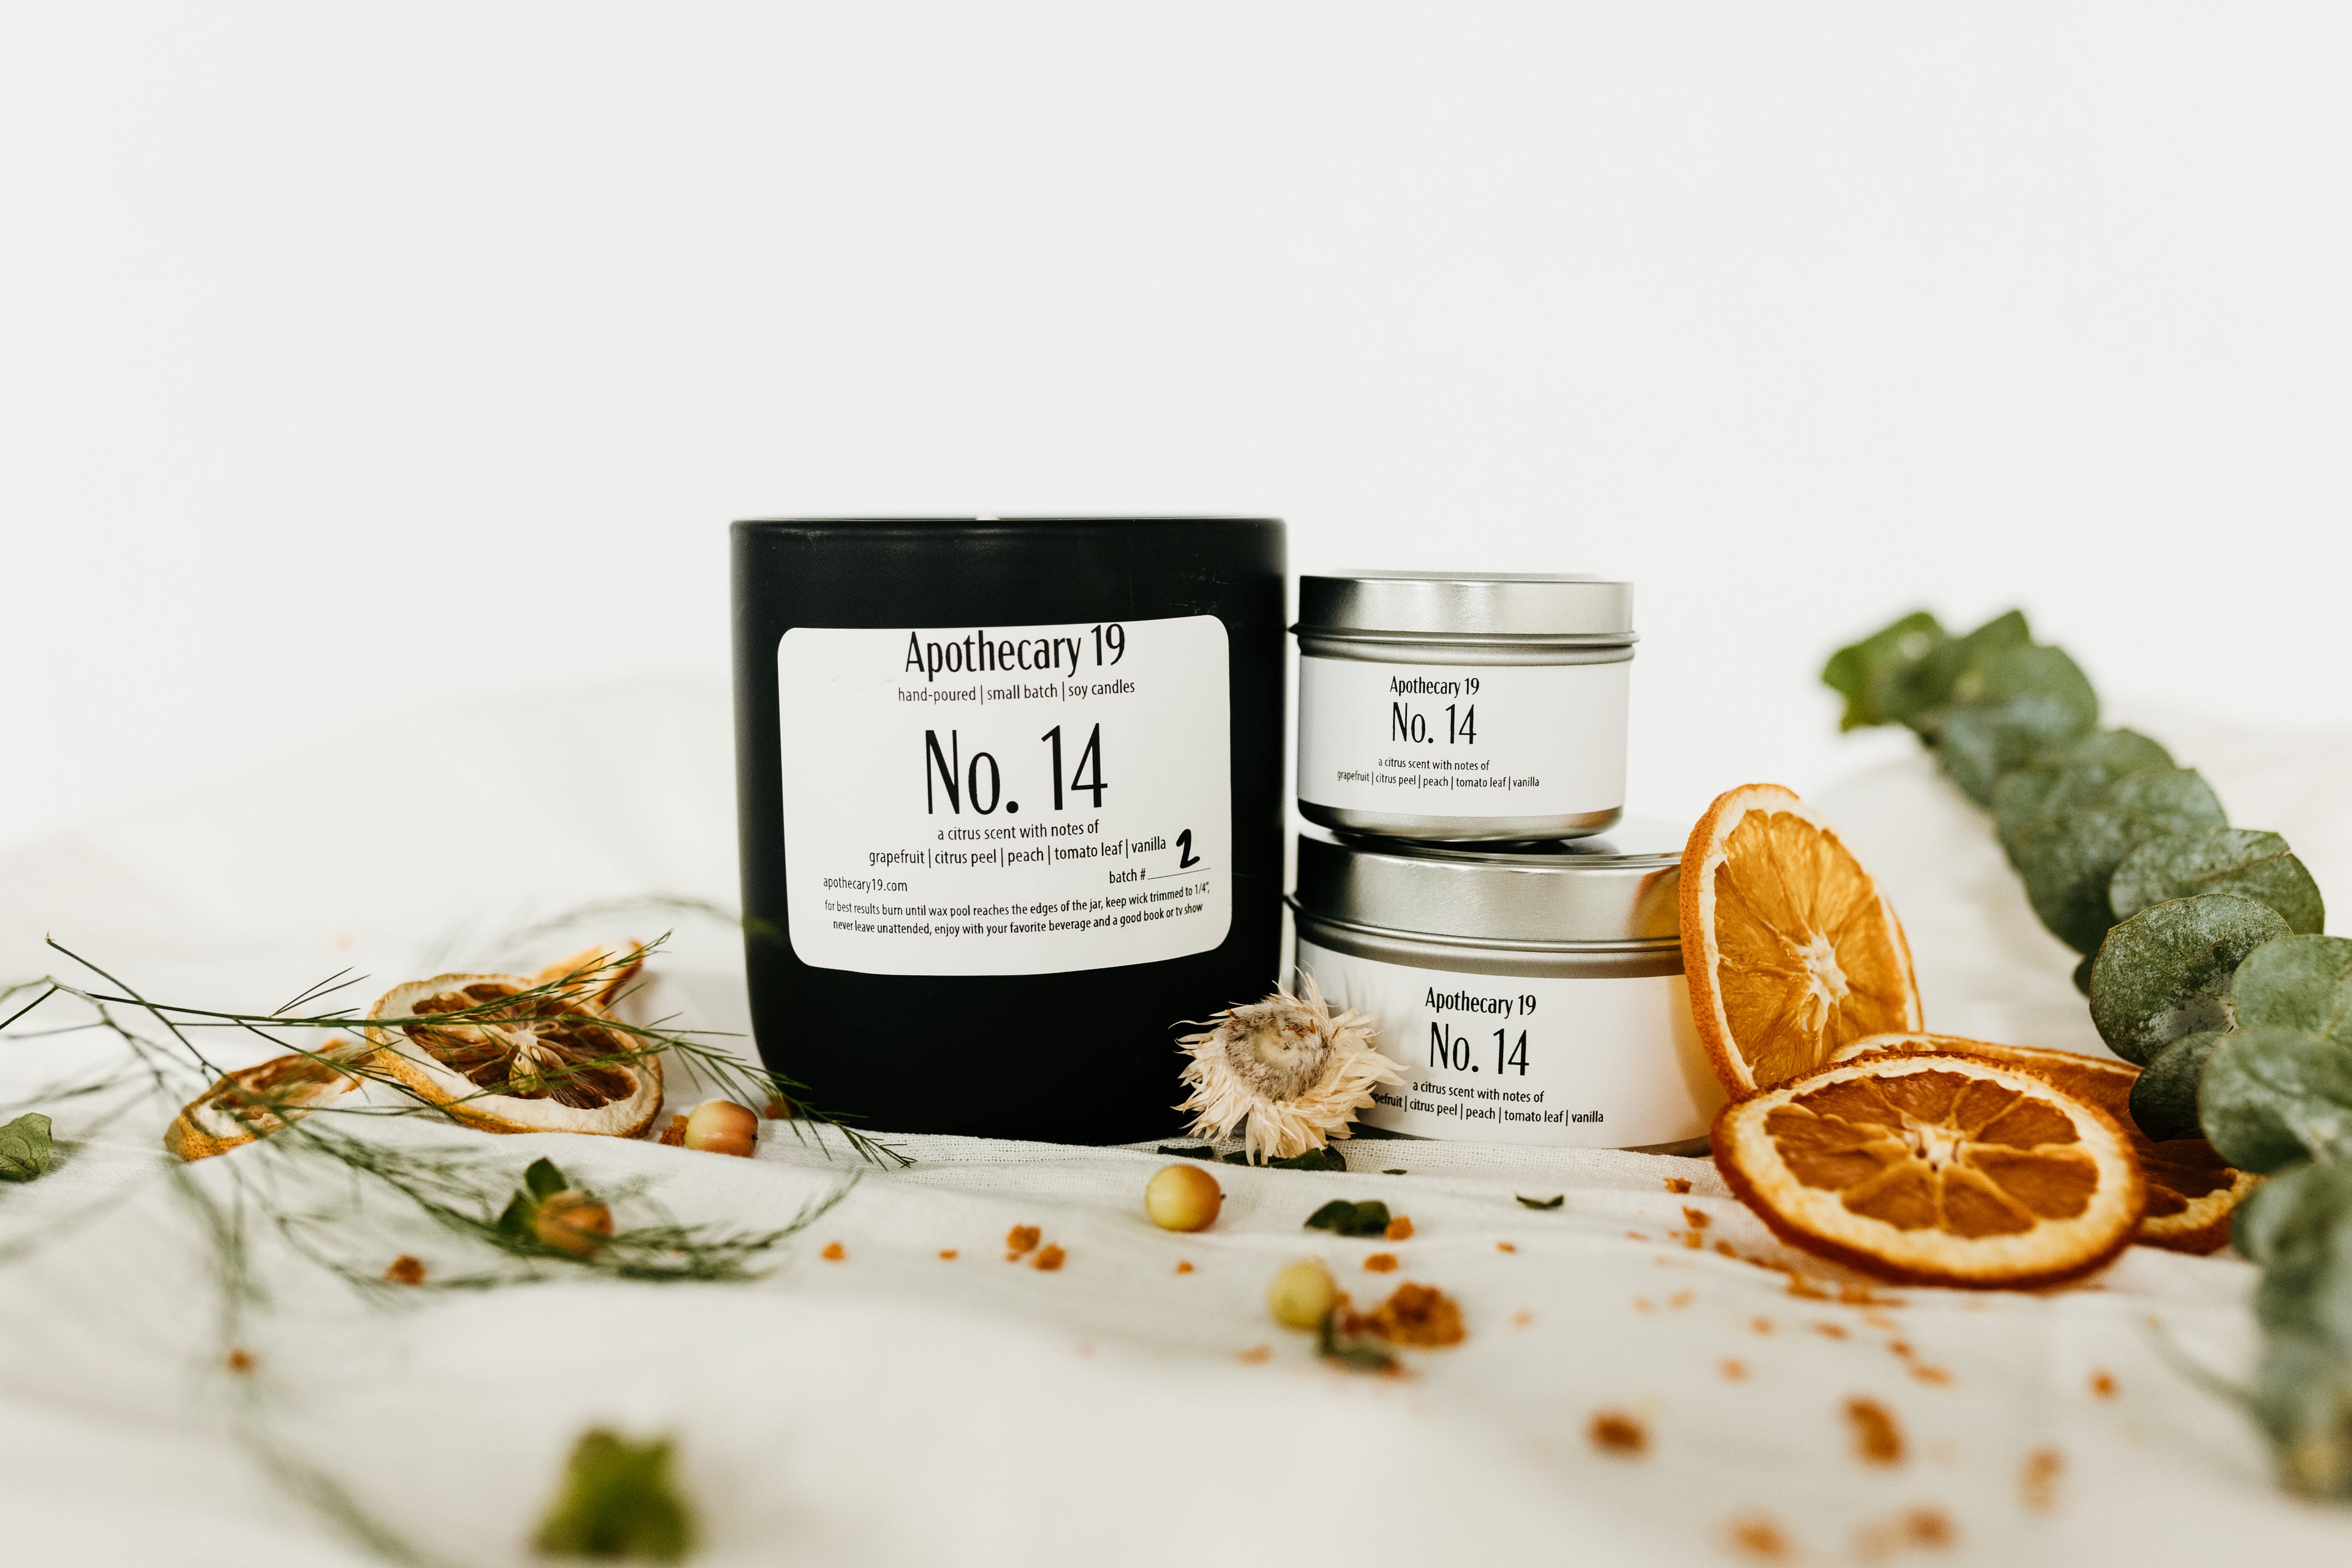 No. 14 — a citrus scent